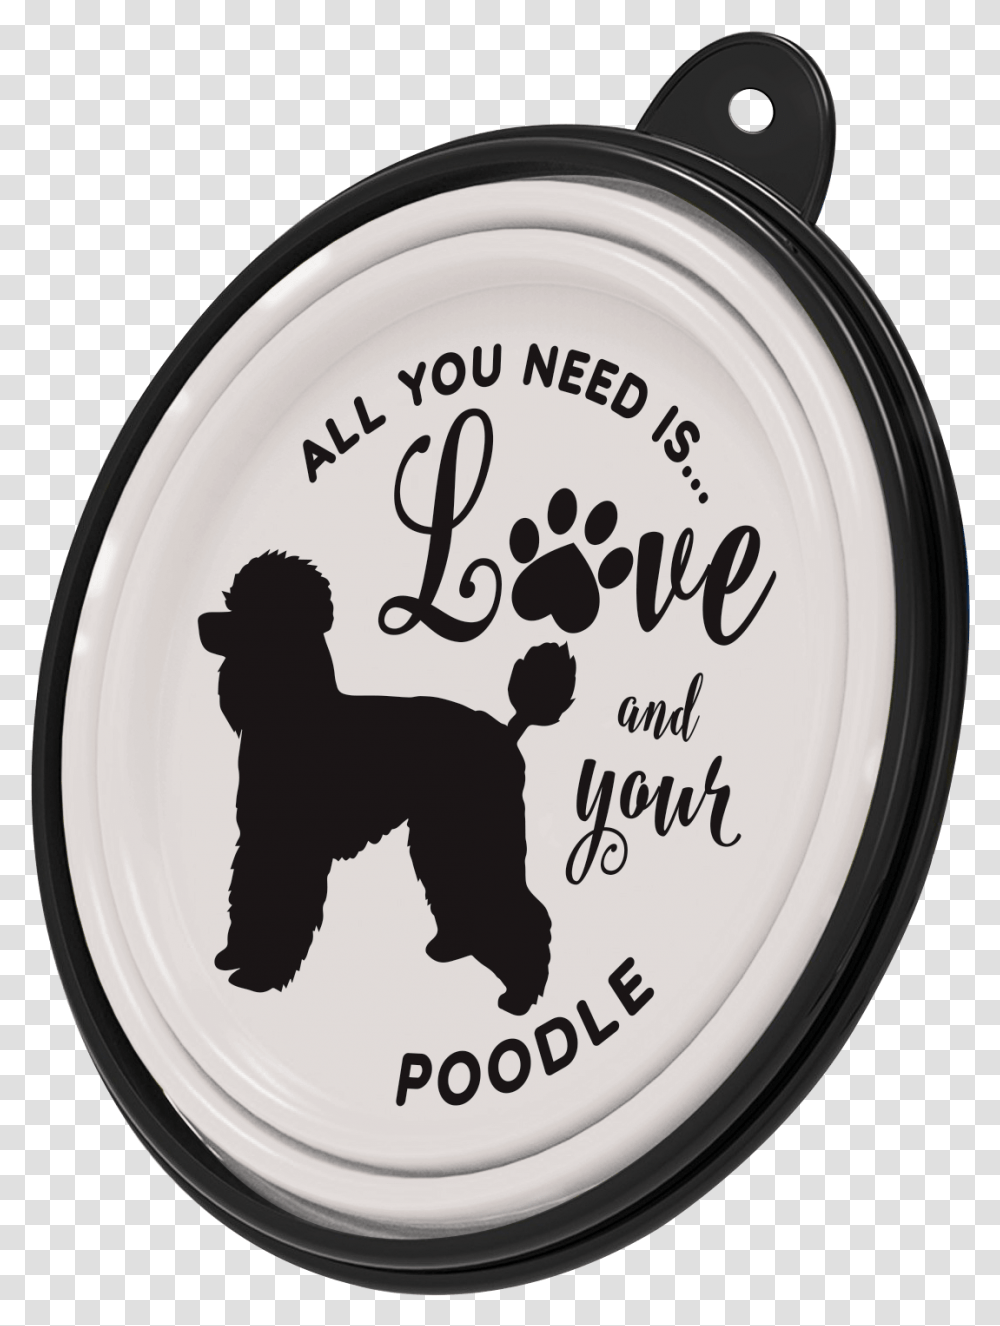 Portable Bowl Poodle, Text, Person, Label, Clock Tower Transparent Png